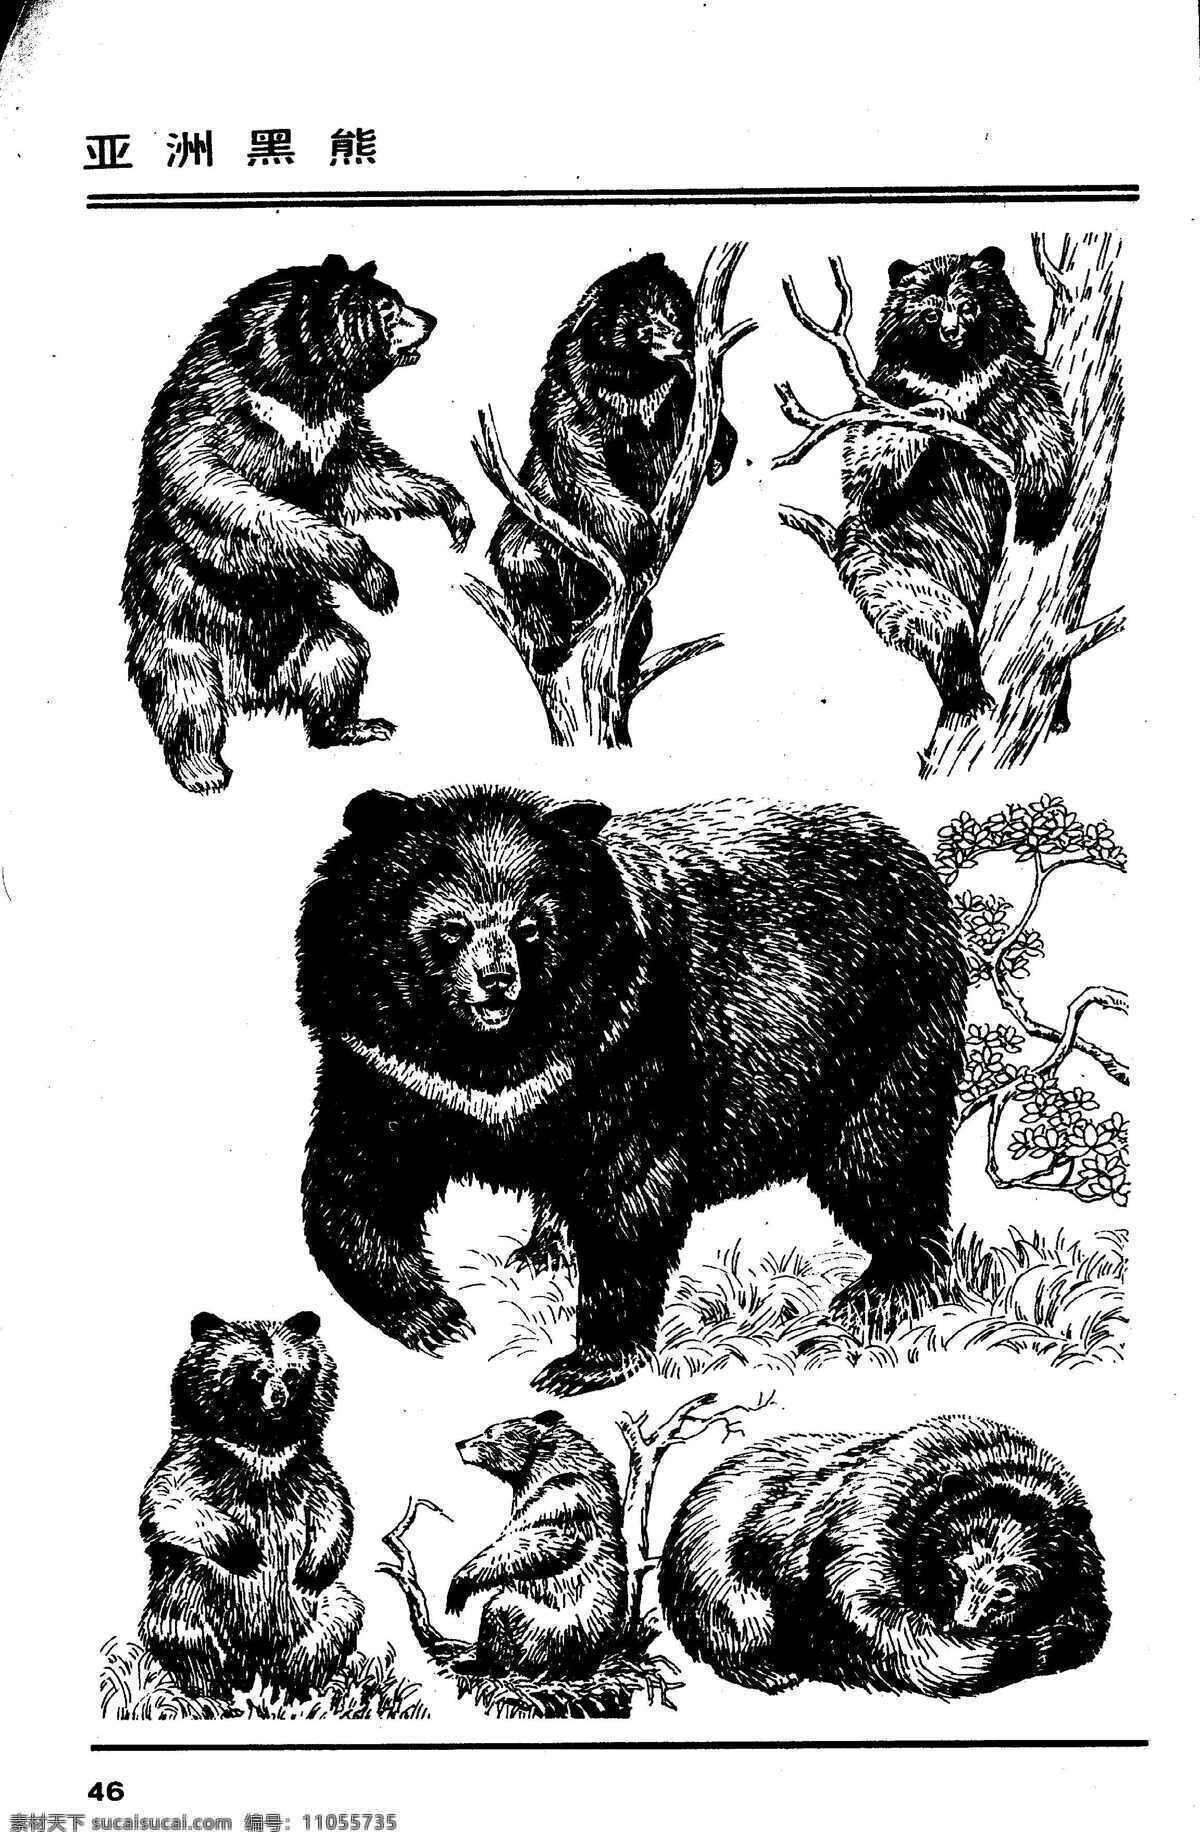 画兽谱43 亚洲黑熊 百兽 兽 家禽 猛兽 动物 白描 线描 绘画 美术 禽兽 野生动物 画兽谱 黑熊 熊 生物世界 设计图库